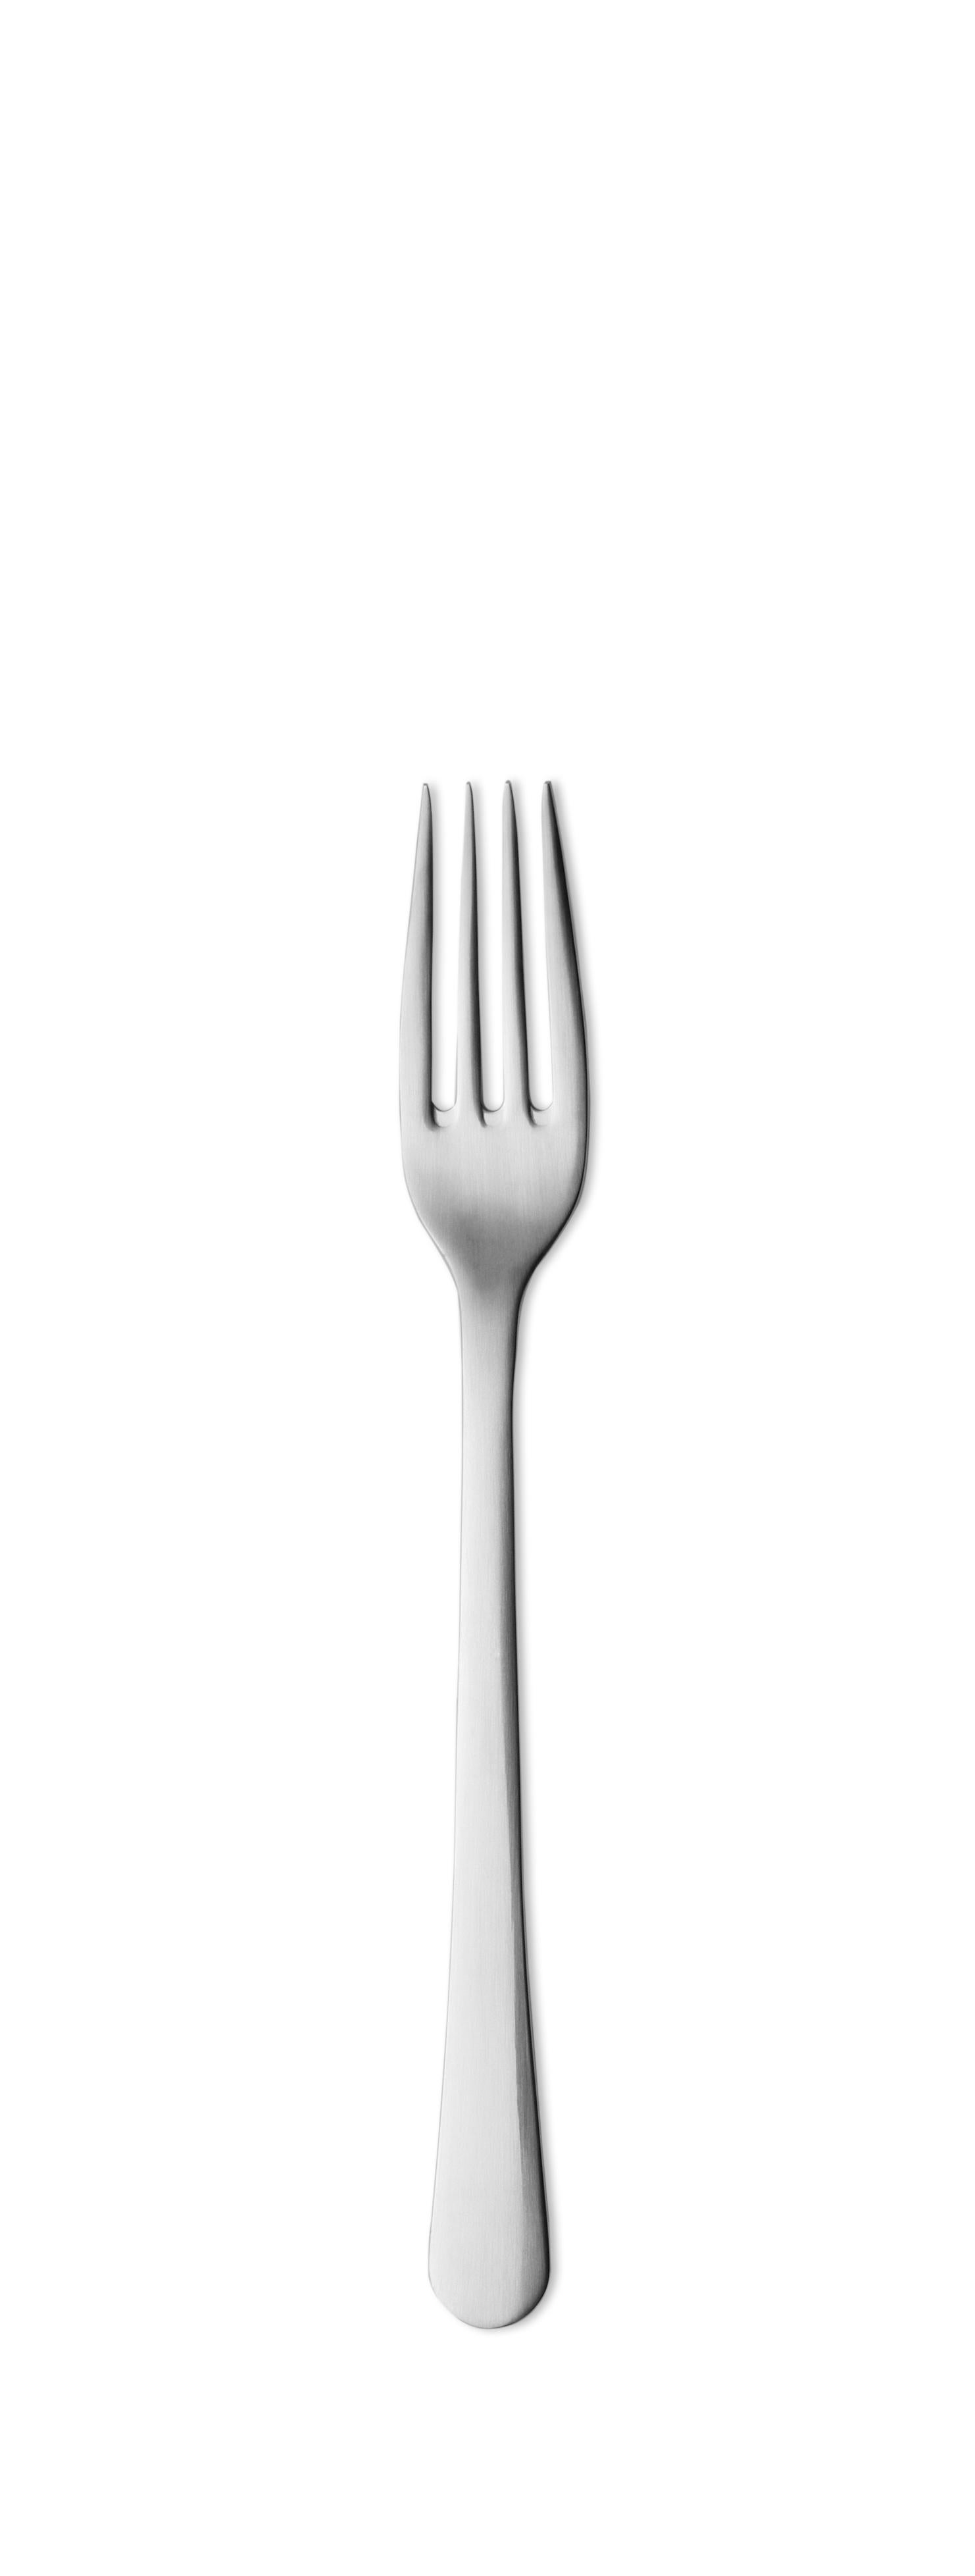 Modern Georg Jensen Copenhagen Dinner Fork in Stainless Steel by Grethe Meyer